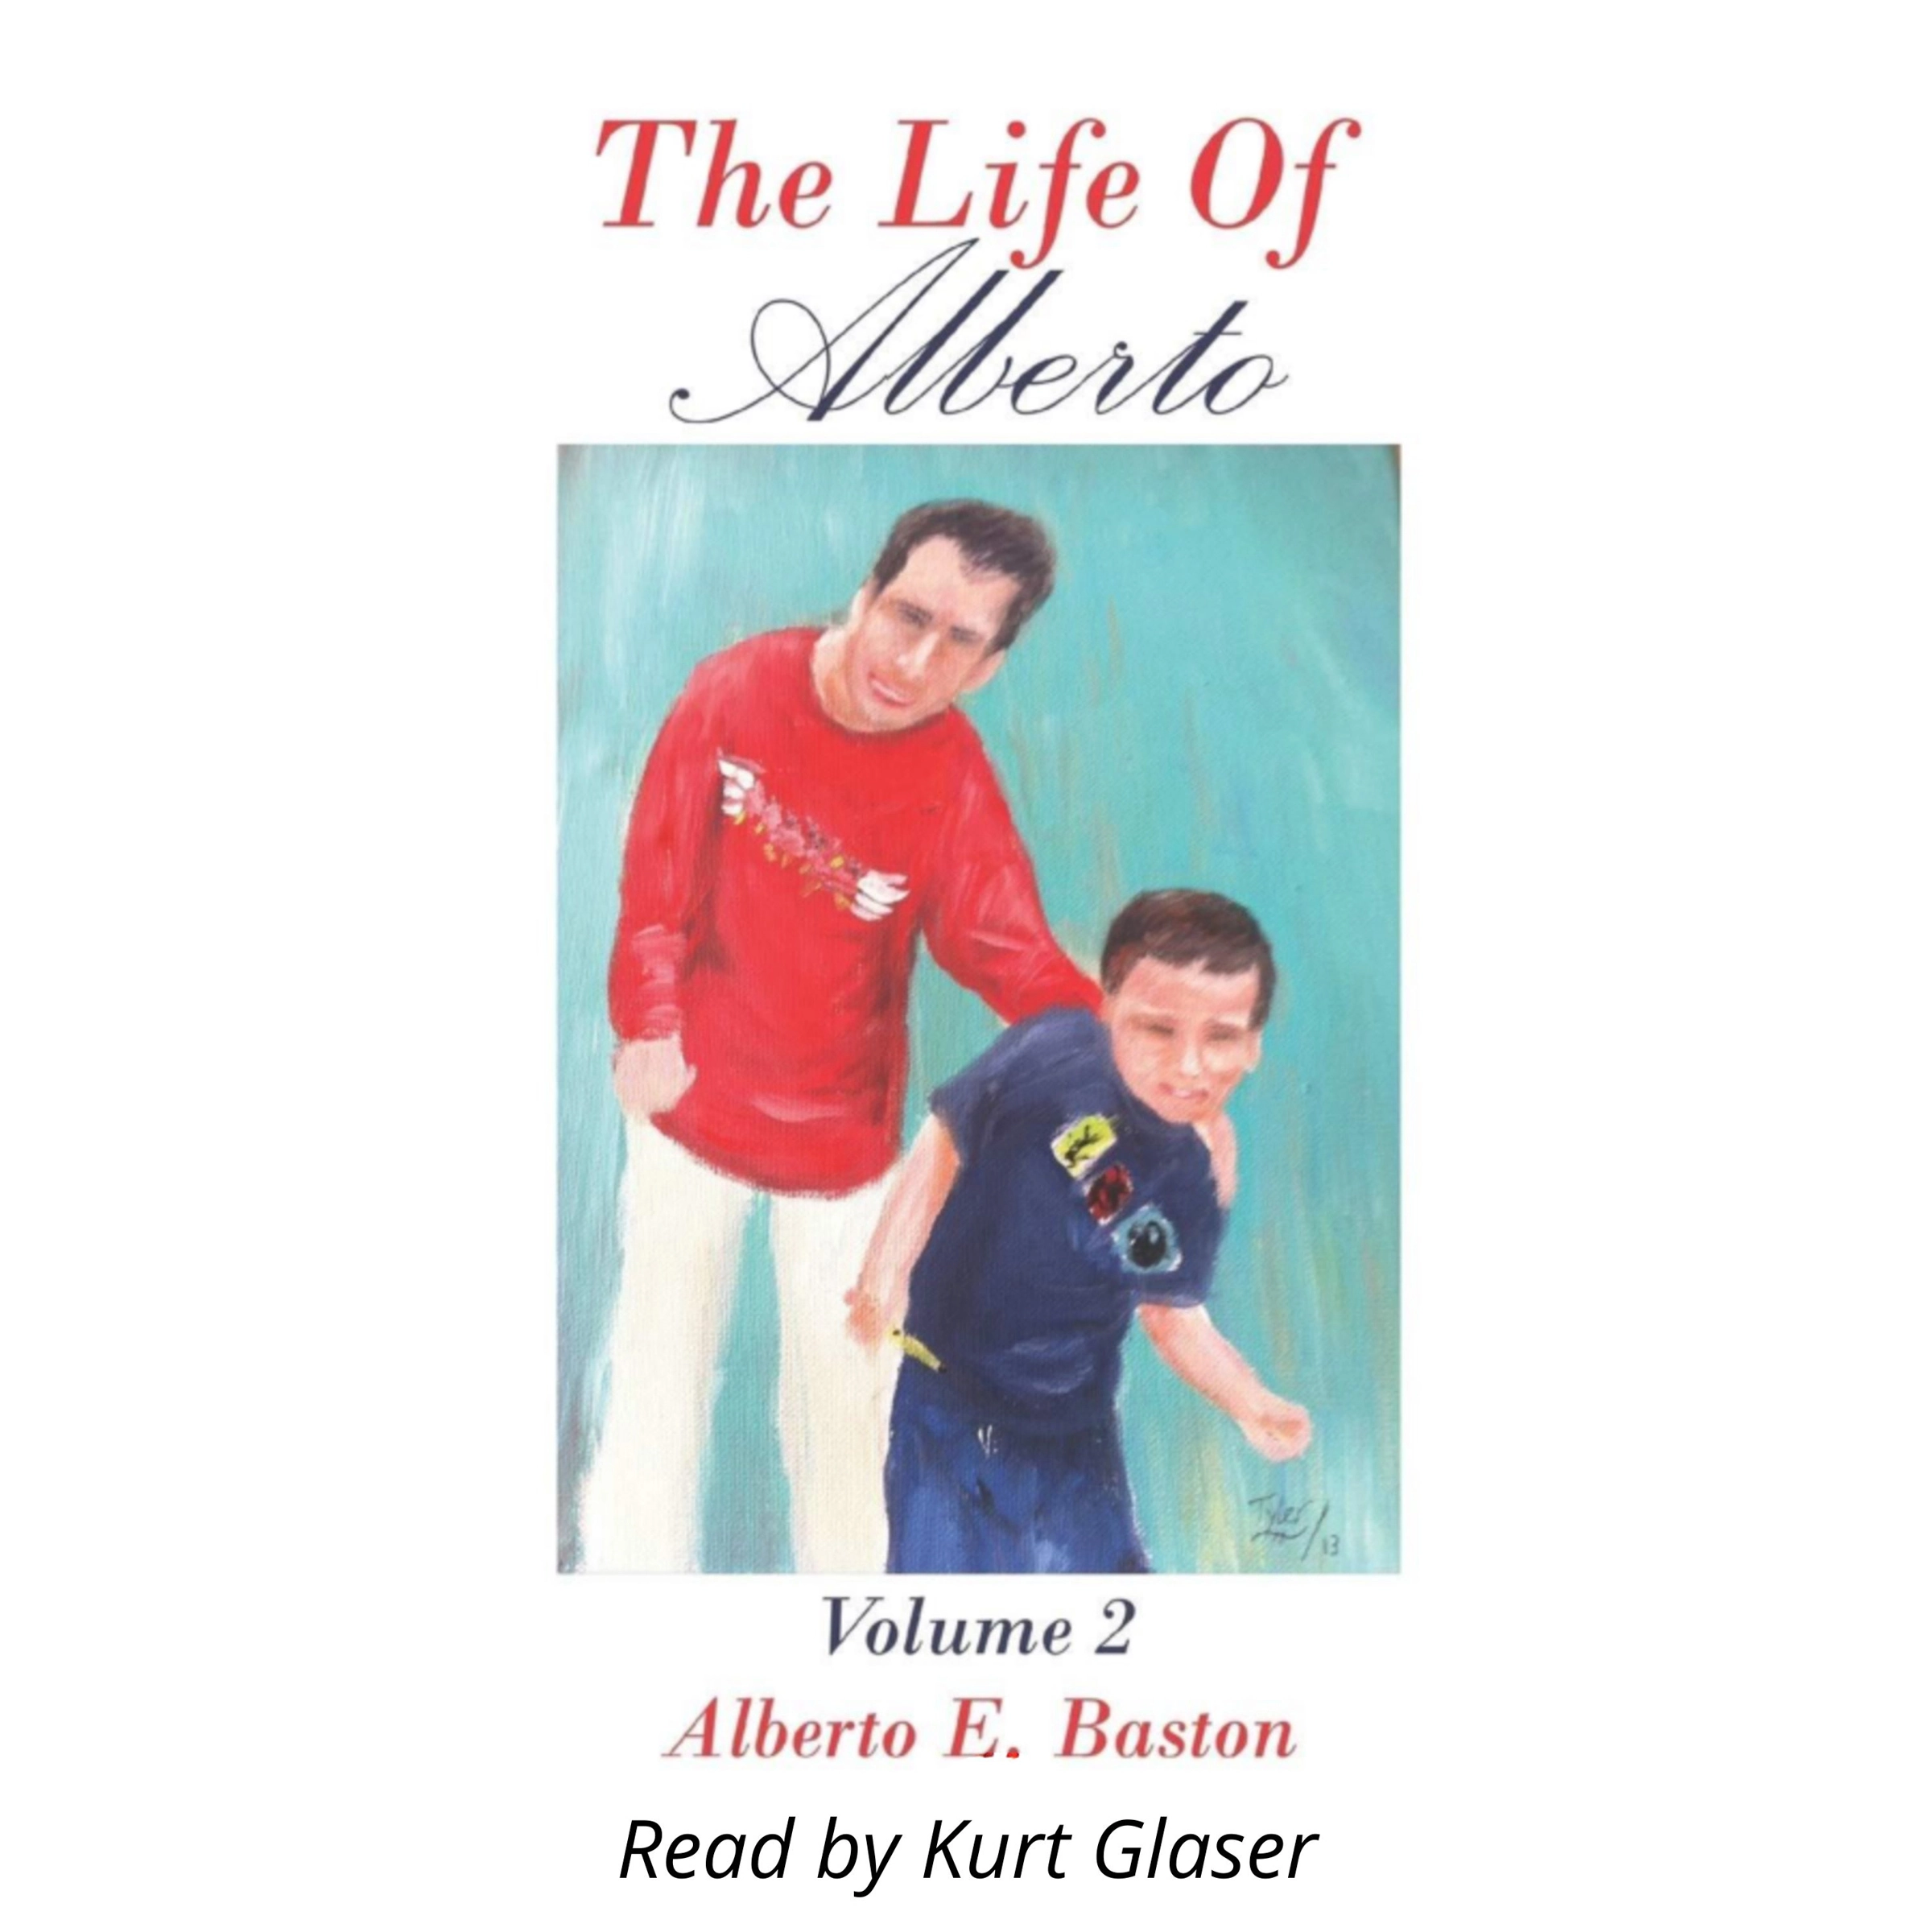 The Life of Alberto Audiobook by Alberto E Baston